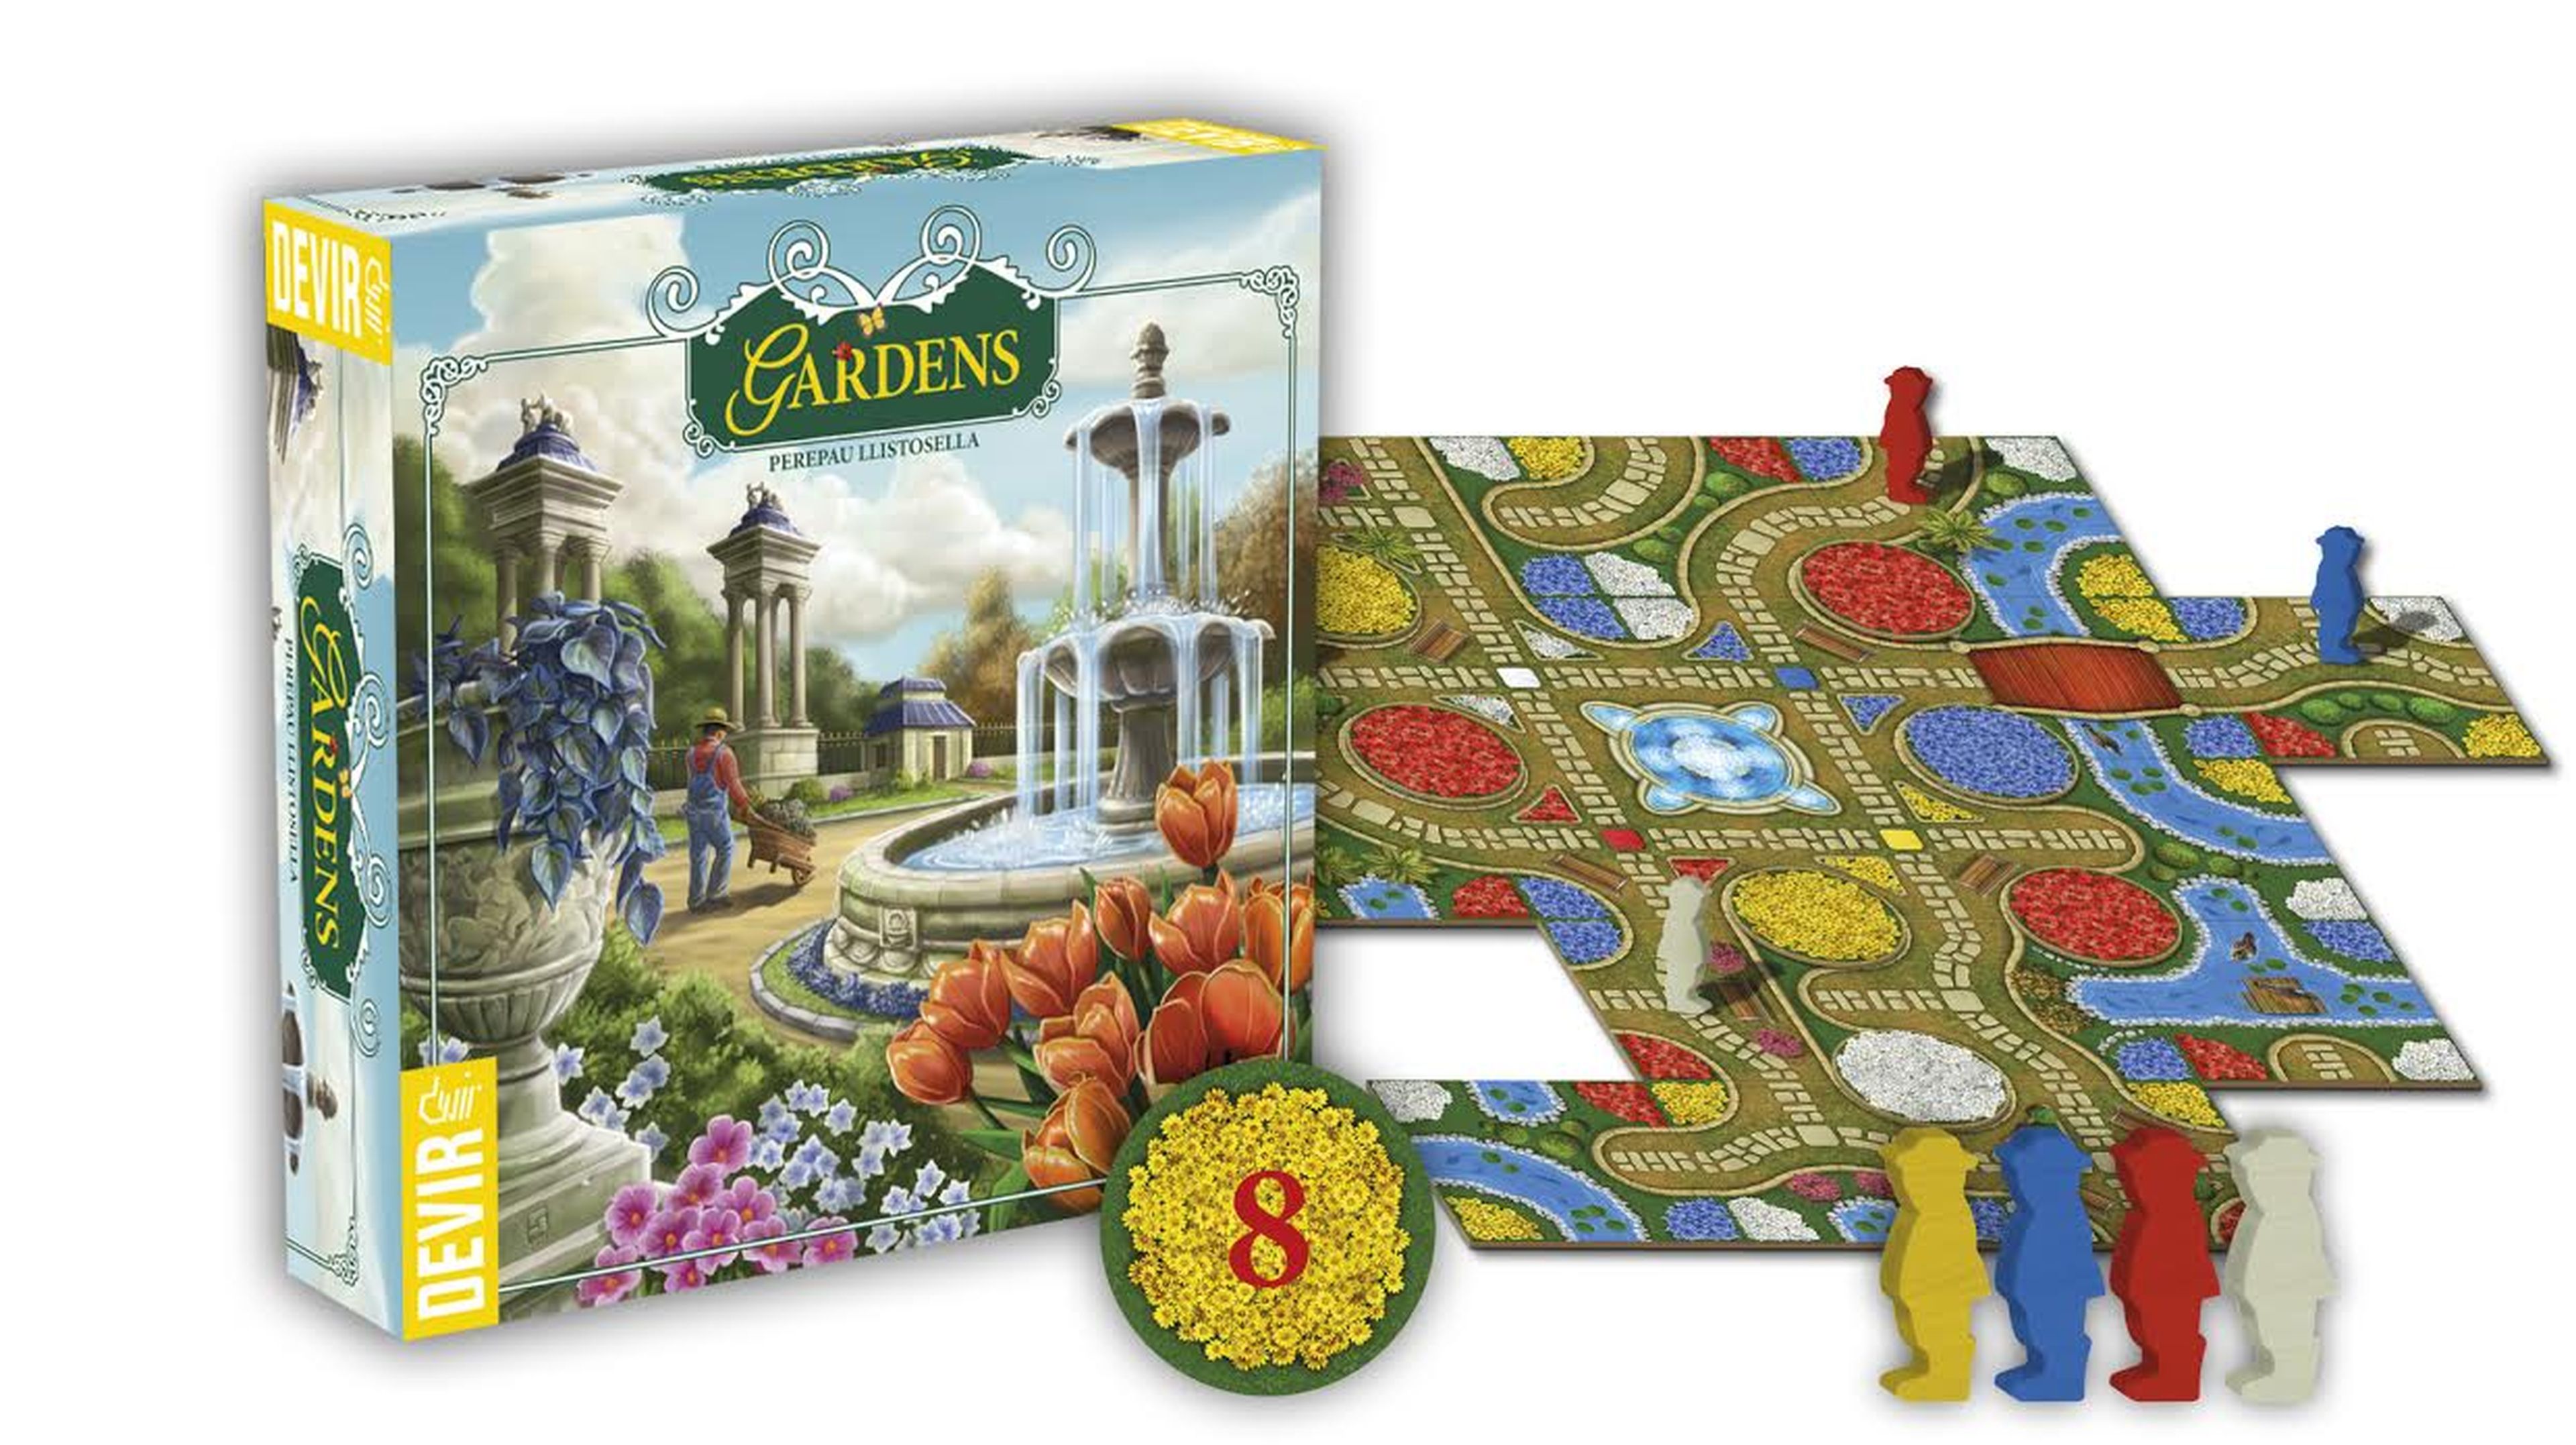 Gardens, el juego mesa "florido" de Devir